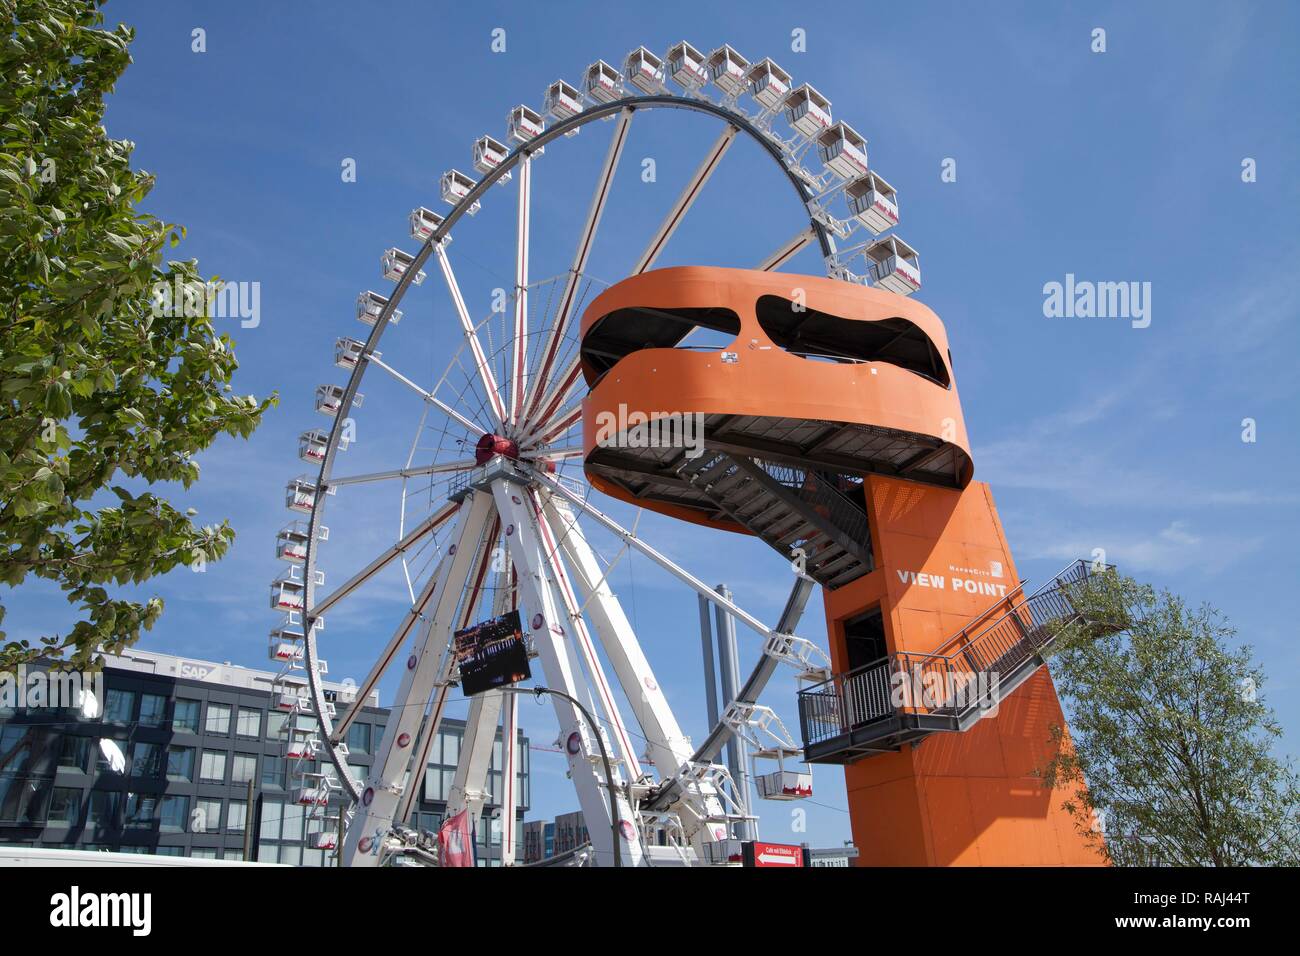 Riesenrad und View Point, HafenCity, Hamburg, PublicGround Stockfoto